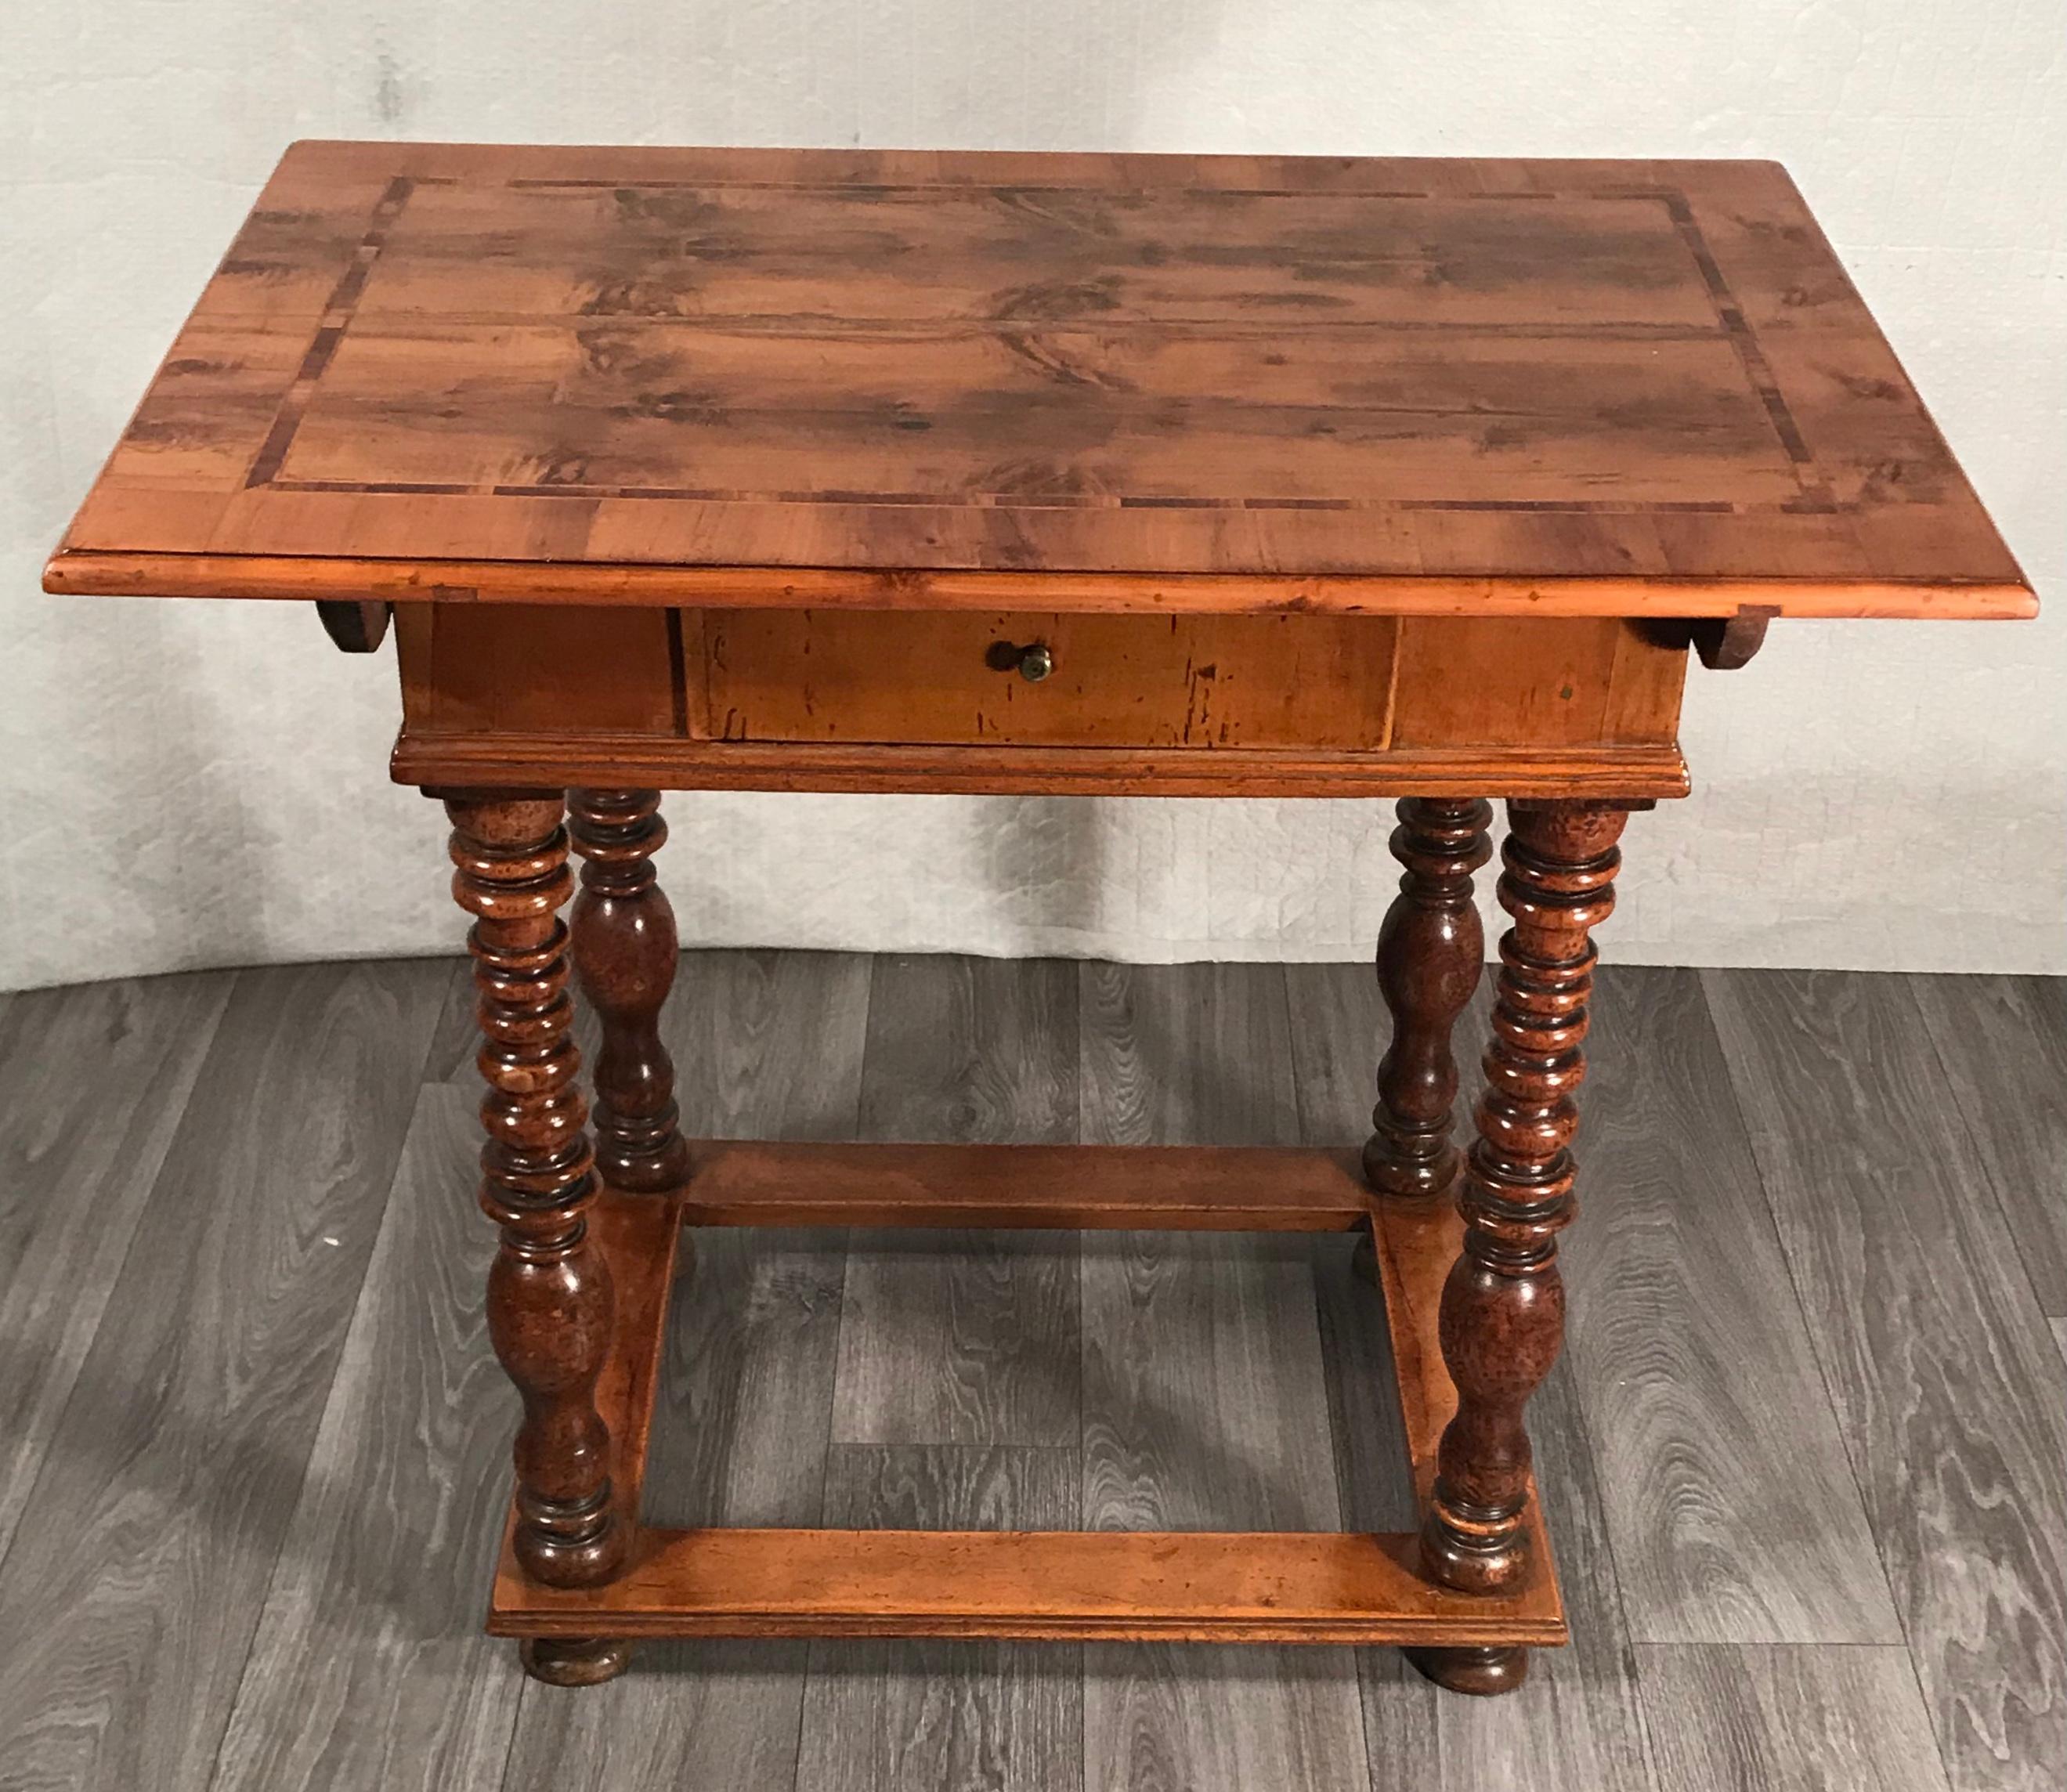 Barocktisch, Süddeutschland, 1750. Dieser originale Tisch aus dem 18. Jahrhundert stammt wahrscheinlich aus der Region Augsburg in Bayern.
Die schöne rechteckige Platte steht auf dem originalen gedrechselten Eichenholzsockel. Die Platte selbst ist